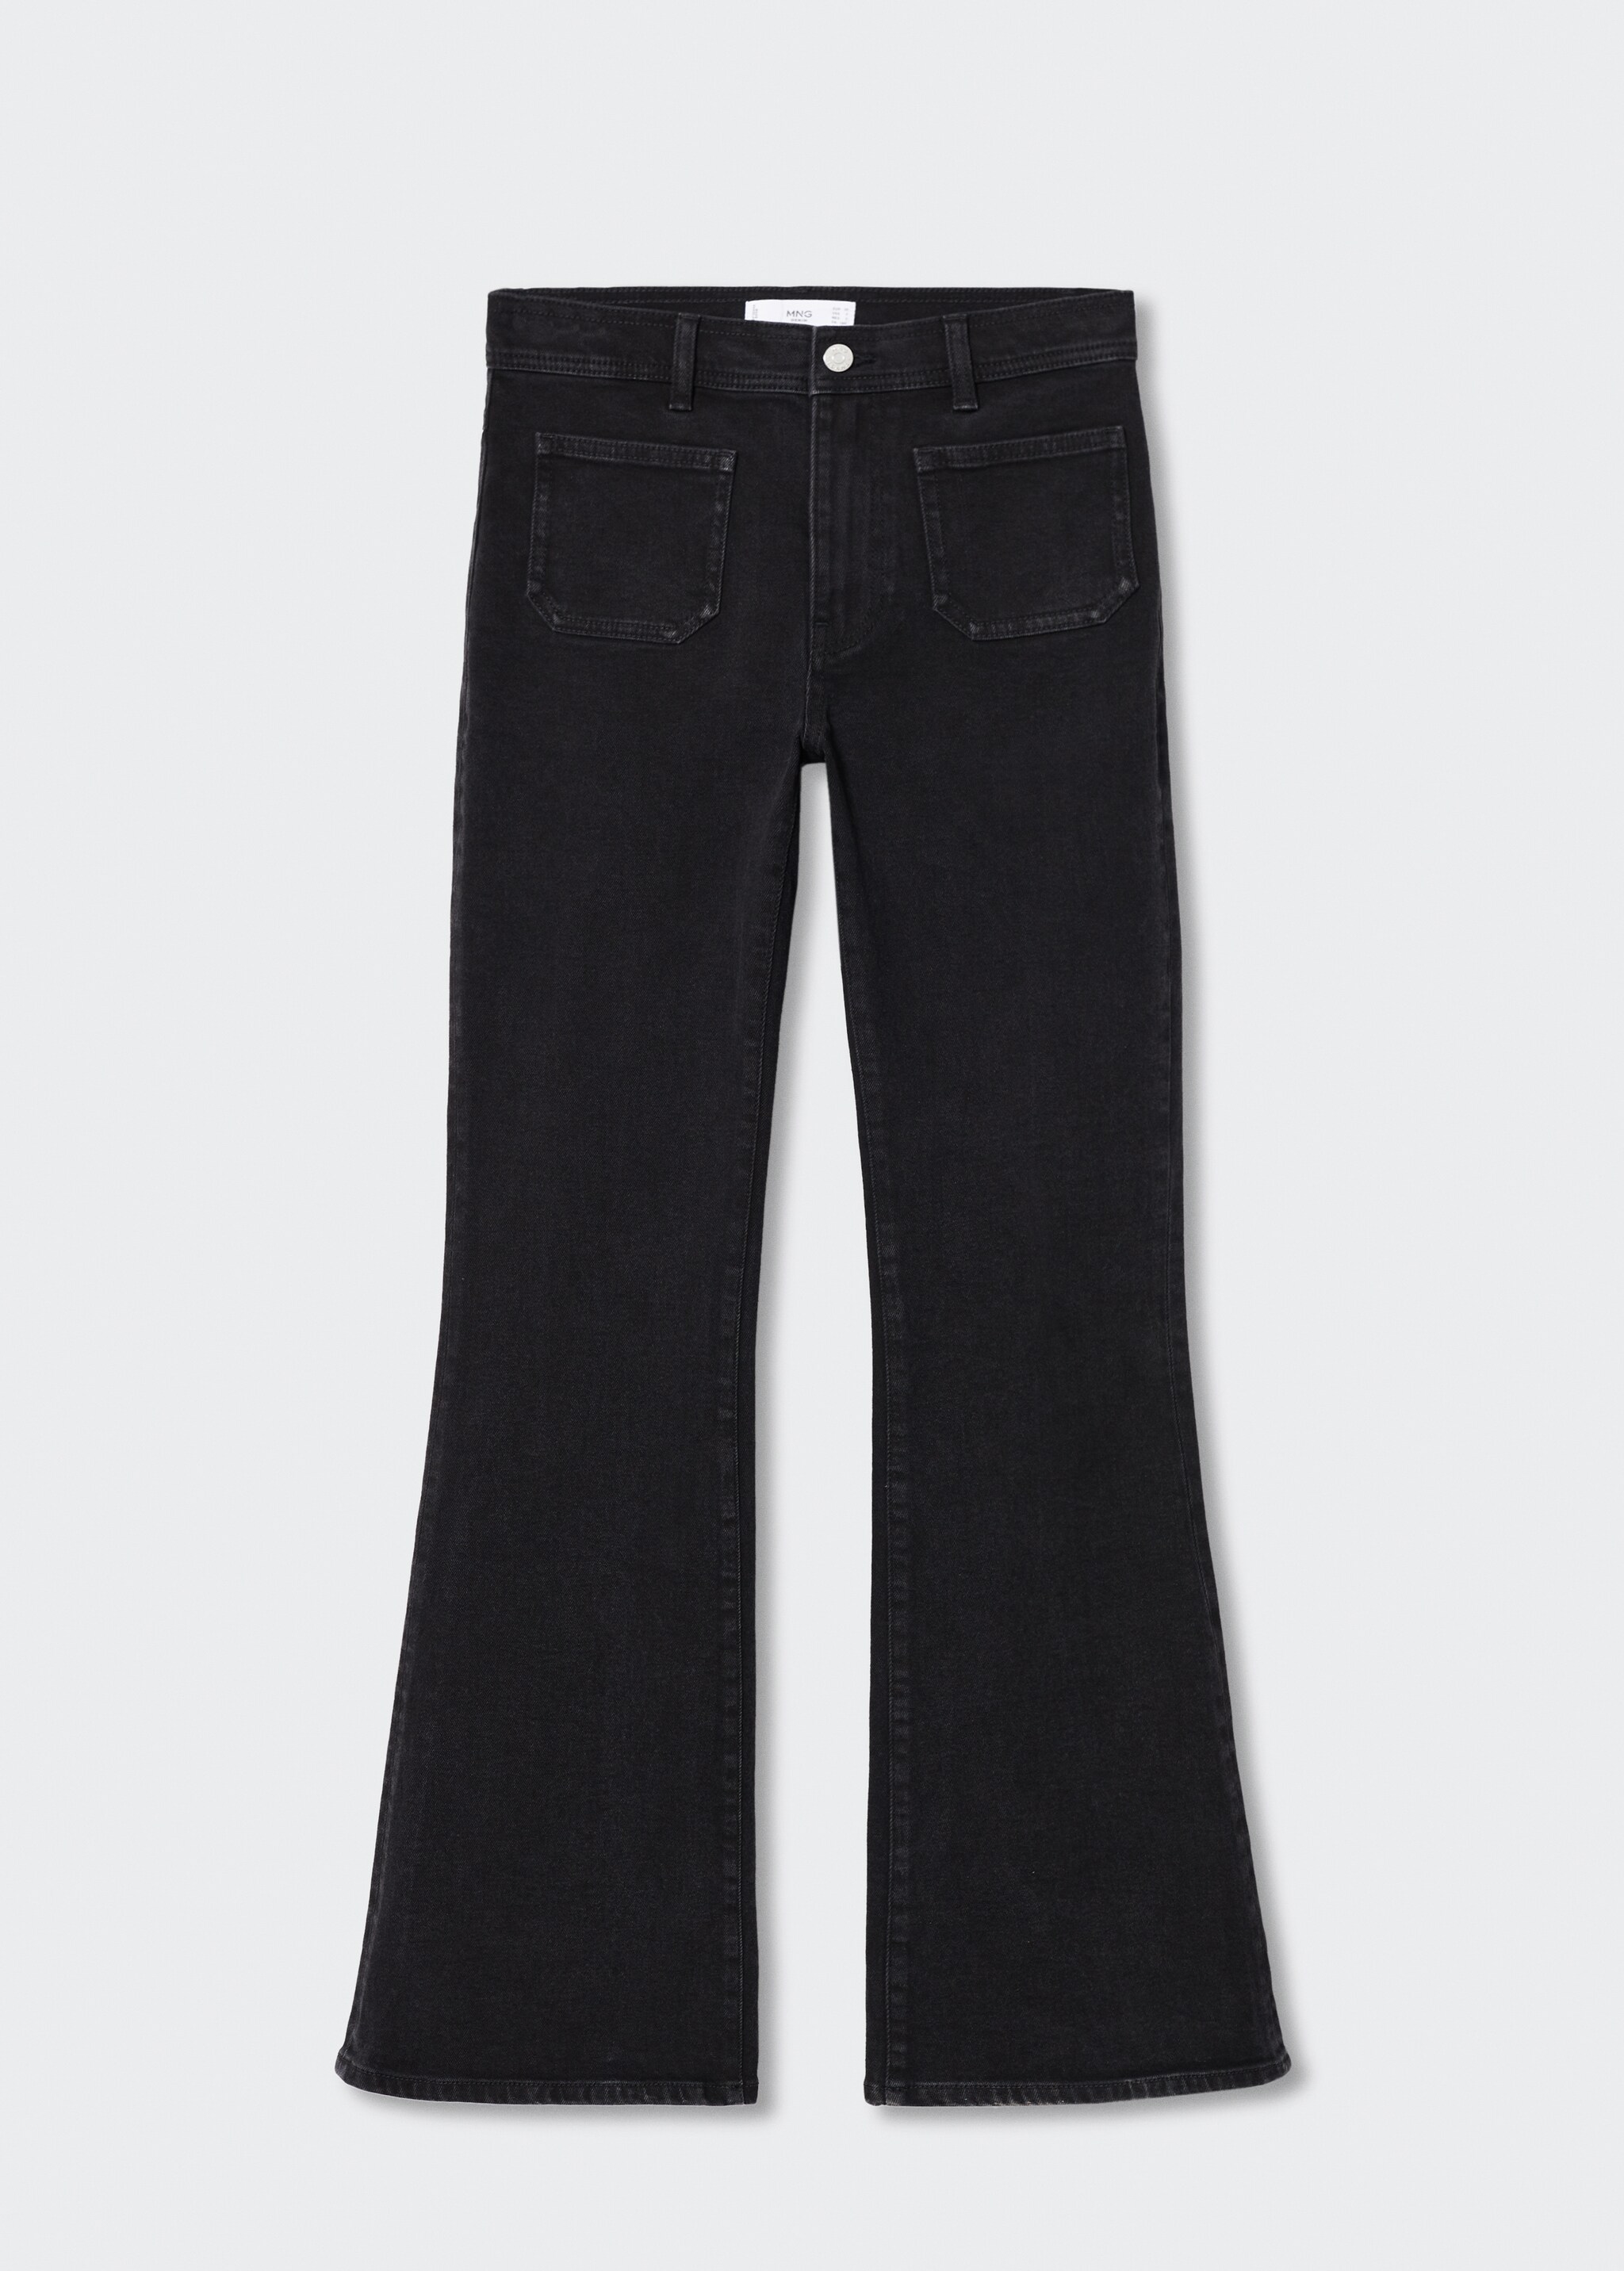 Jeans flare bolsillos - Artículo sin modelo